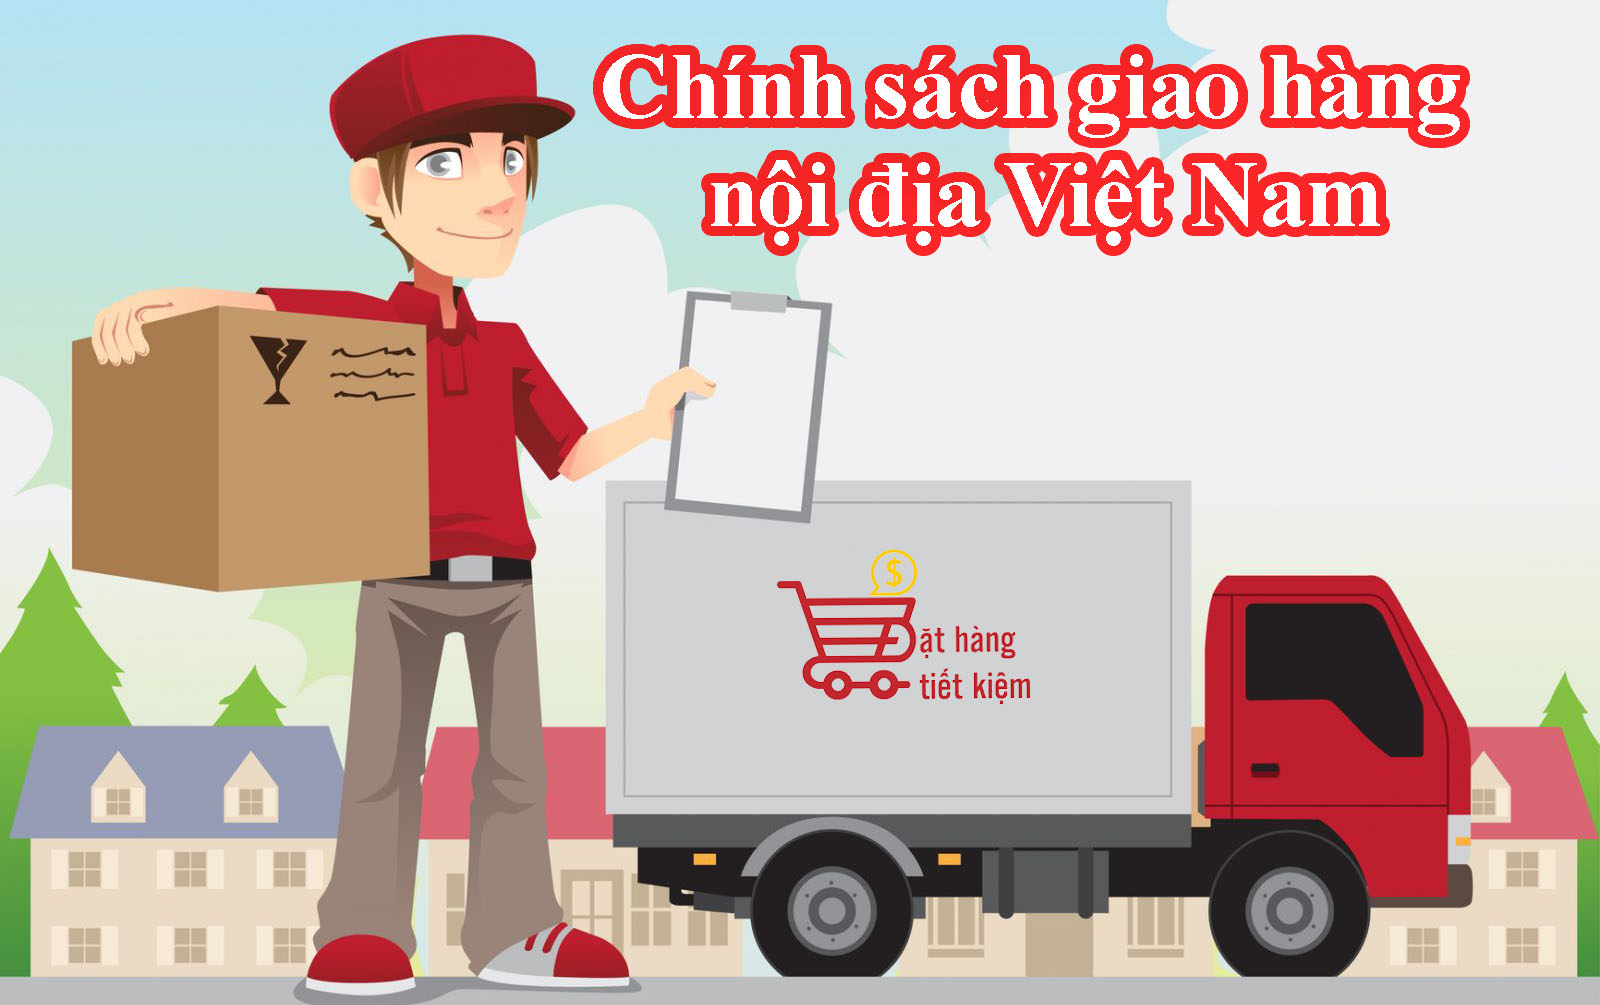 Chính sách giao hàng nội địa Việt Nam